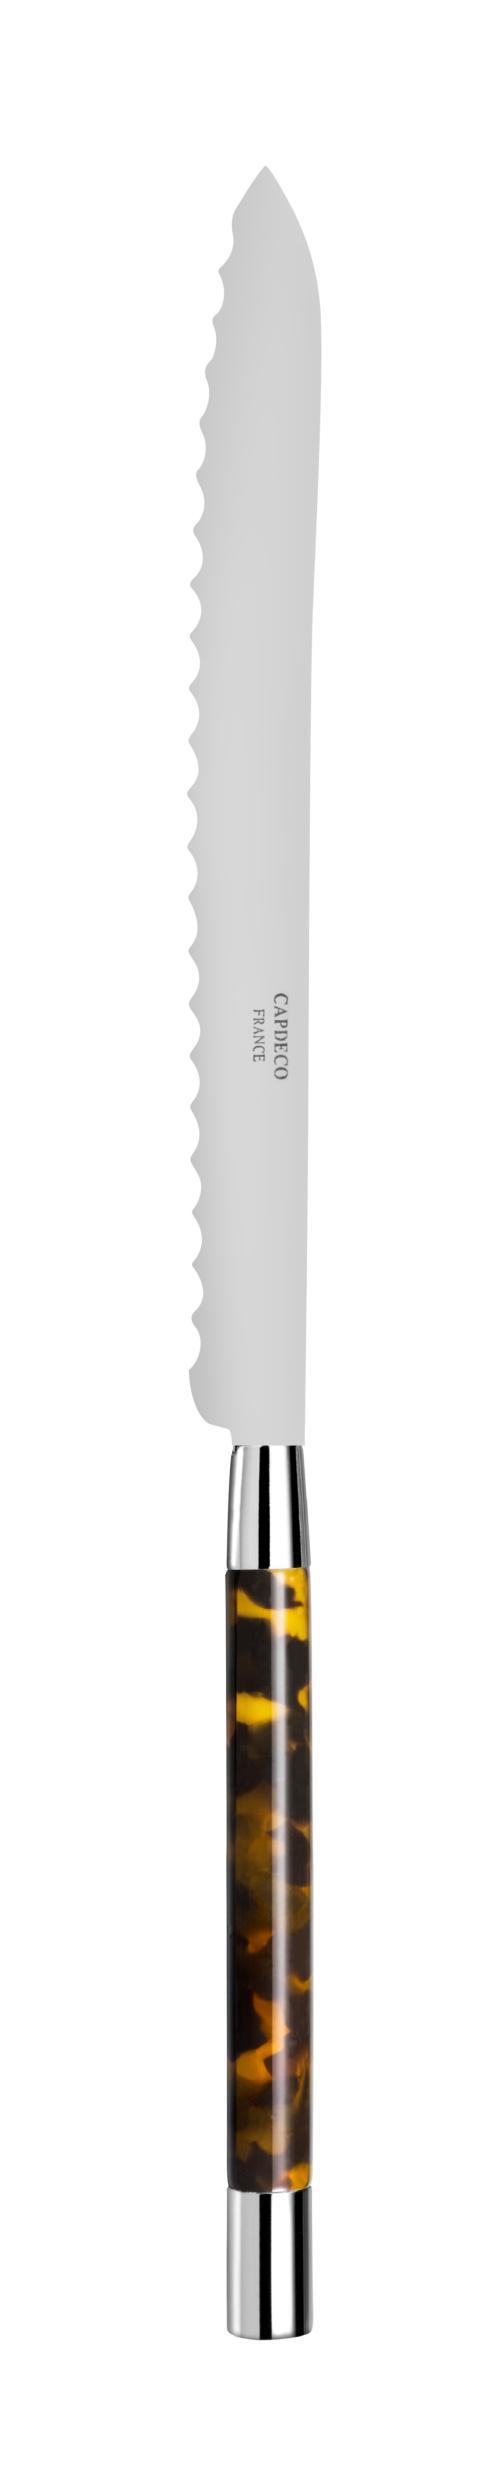 Bread knife - $80.00